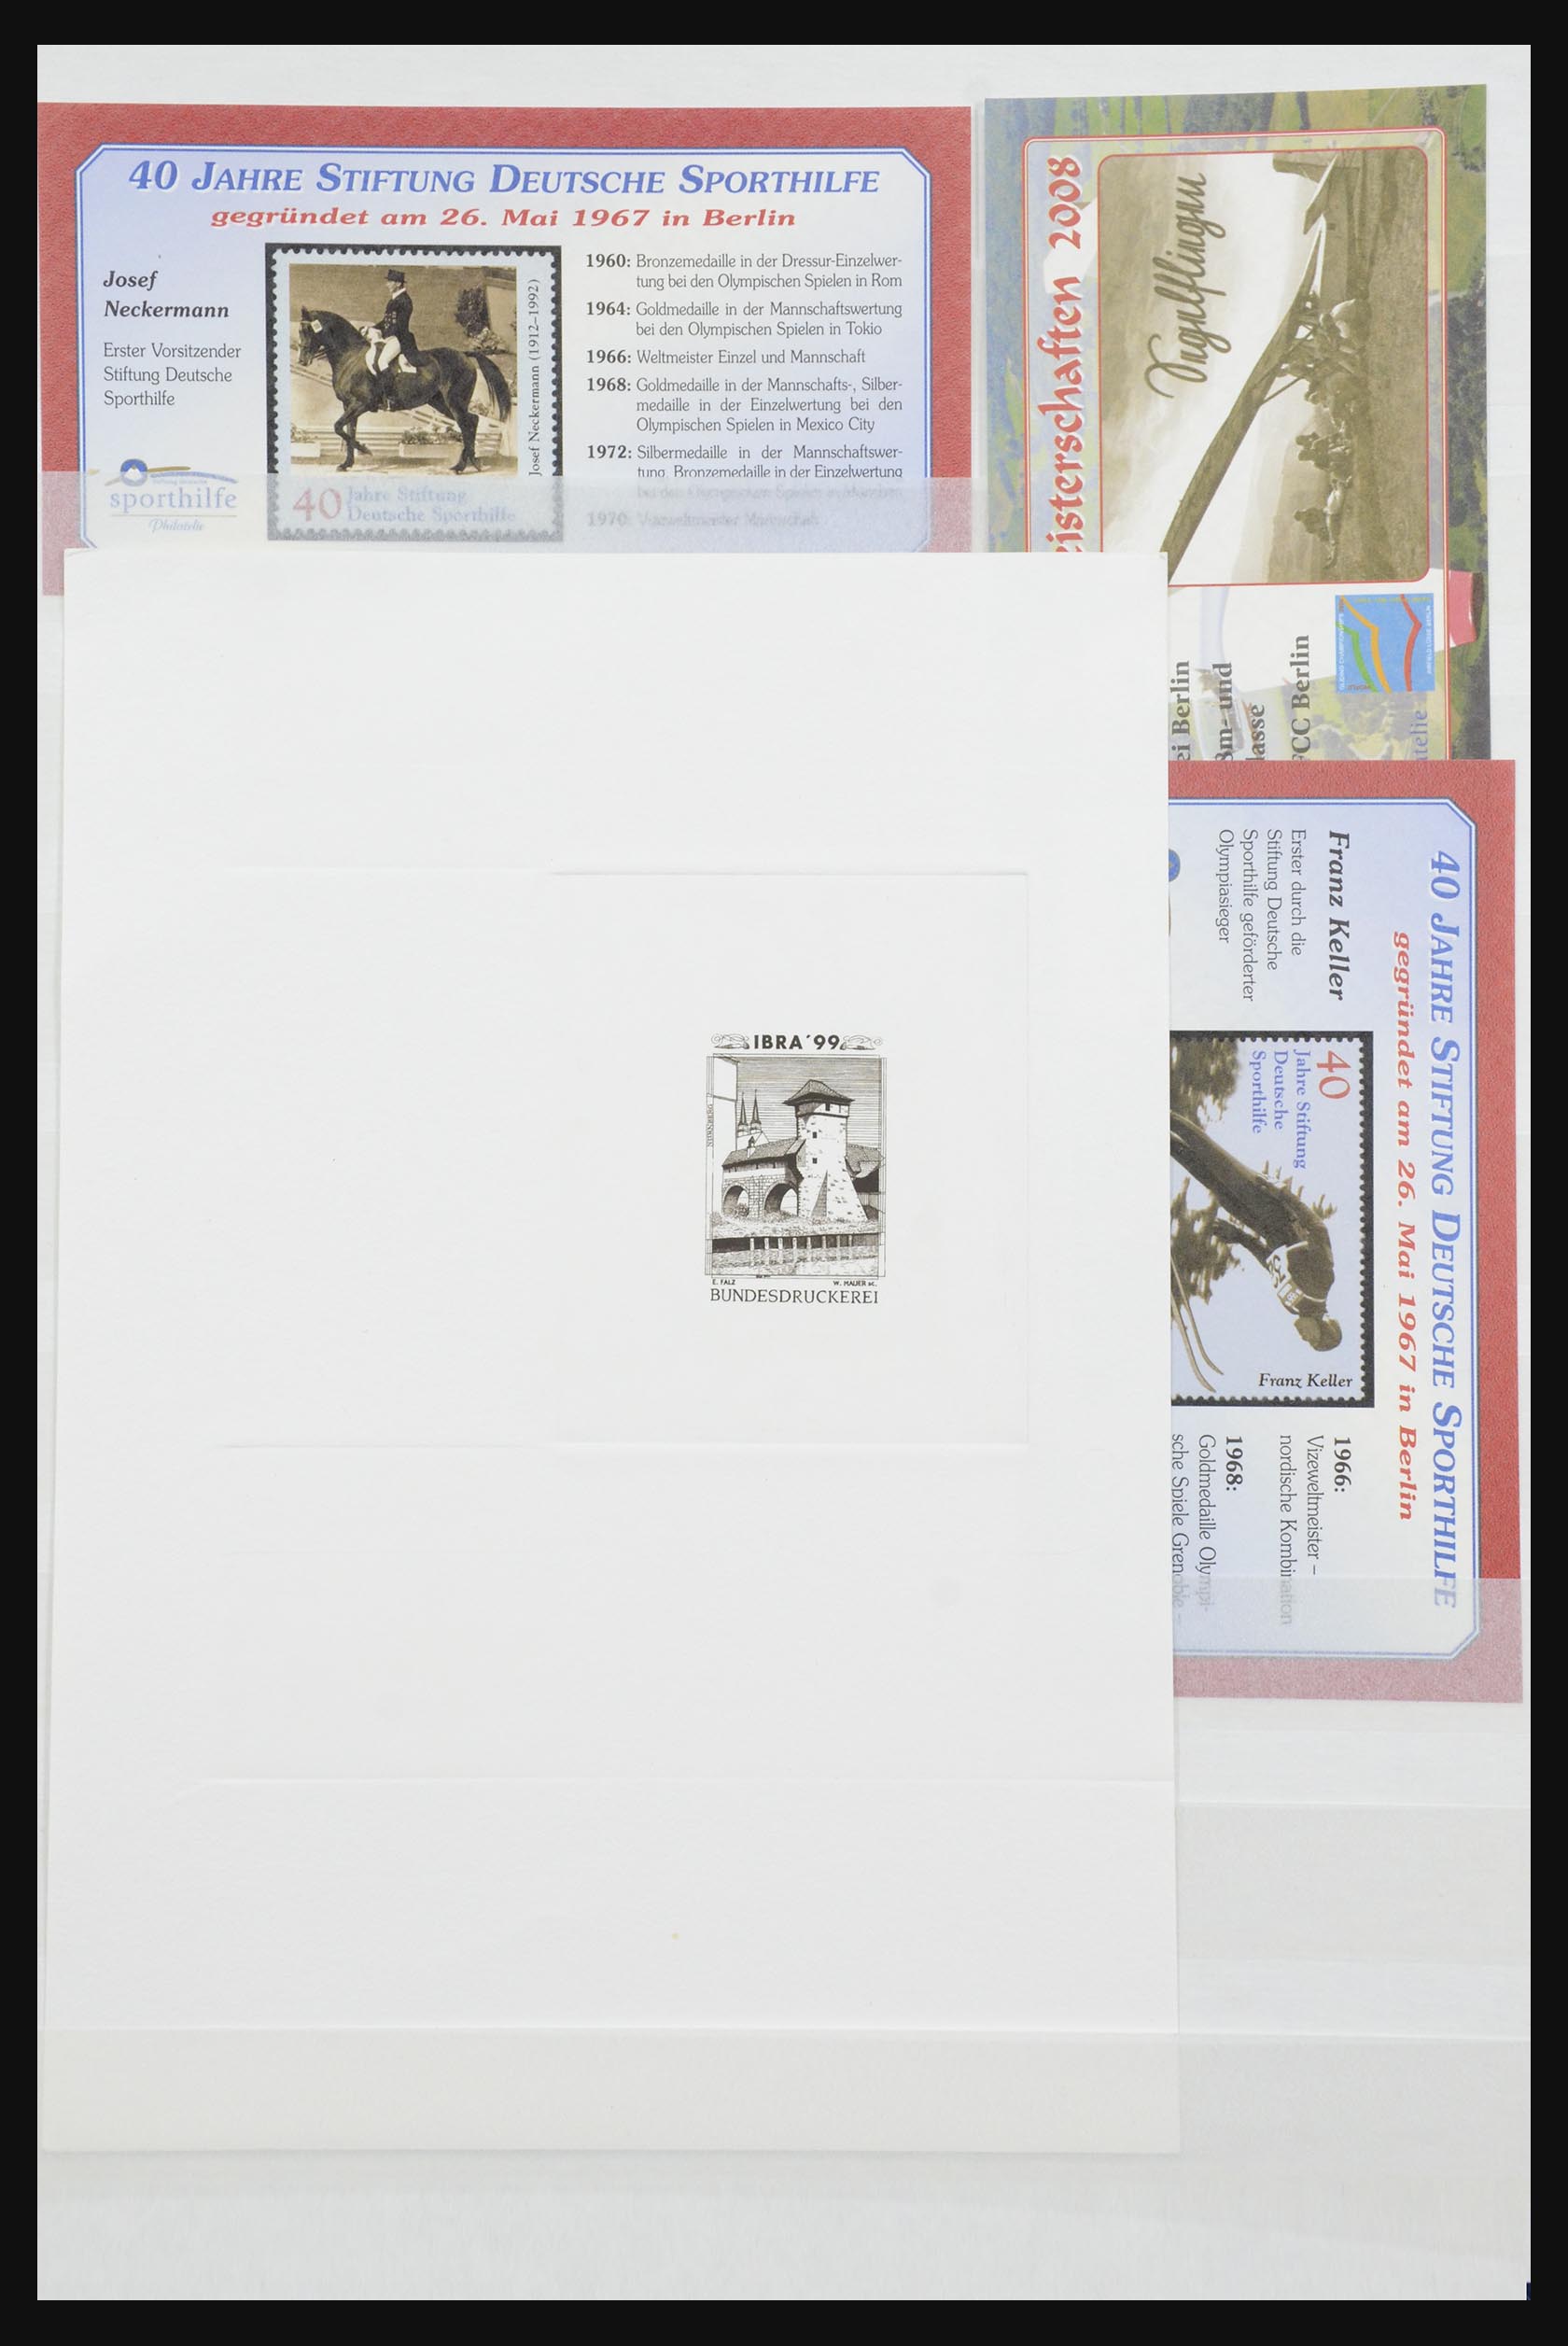 32050 029 - 32050 Bundespost speciale blokken 1980-2010.